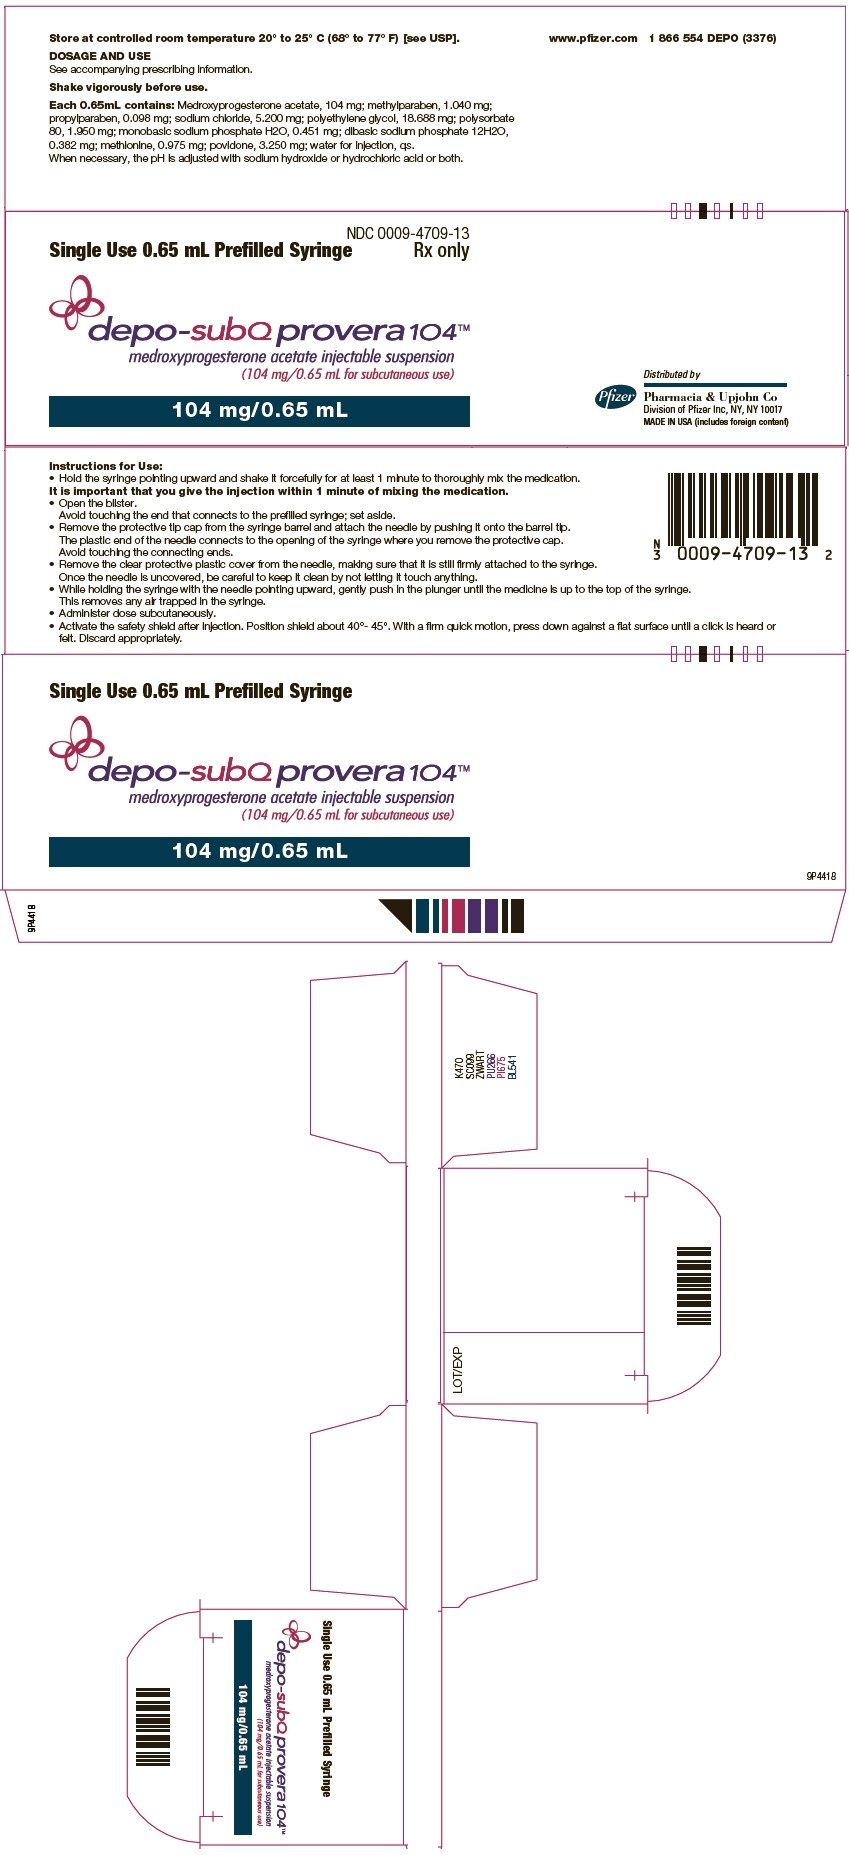 Ndc 0009-4709 Depo-Subq Provera Medroxyprogesterone Acetate  Depro Provera Ndc 2020